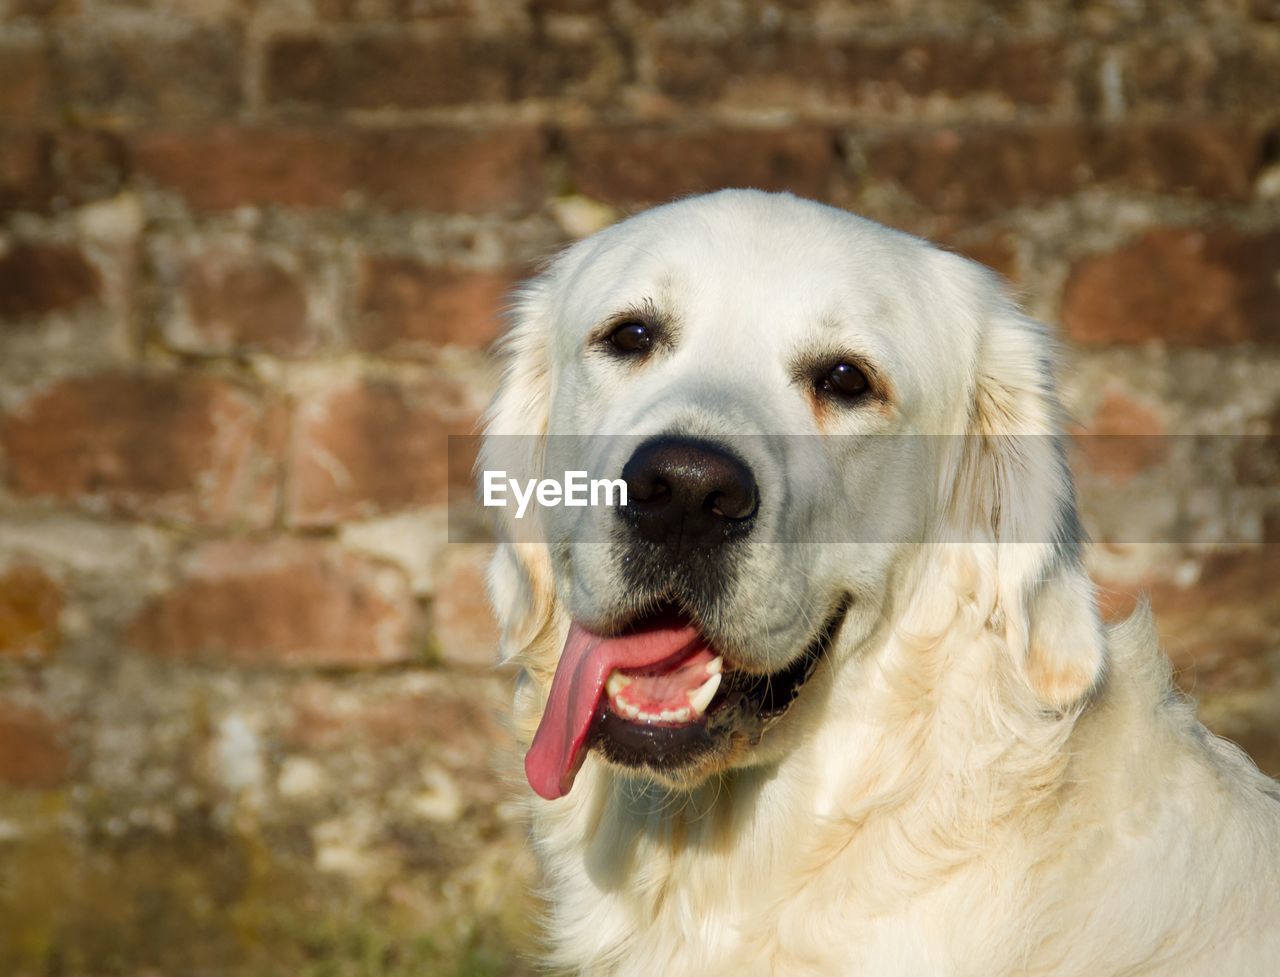 Close-up portrait of a dog. golden retriever.